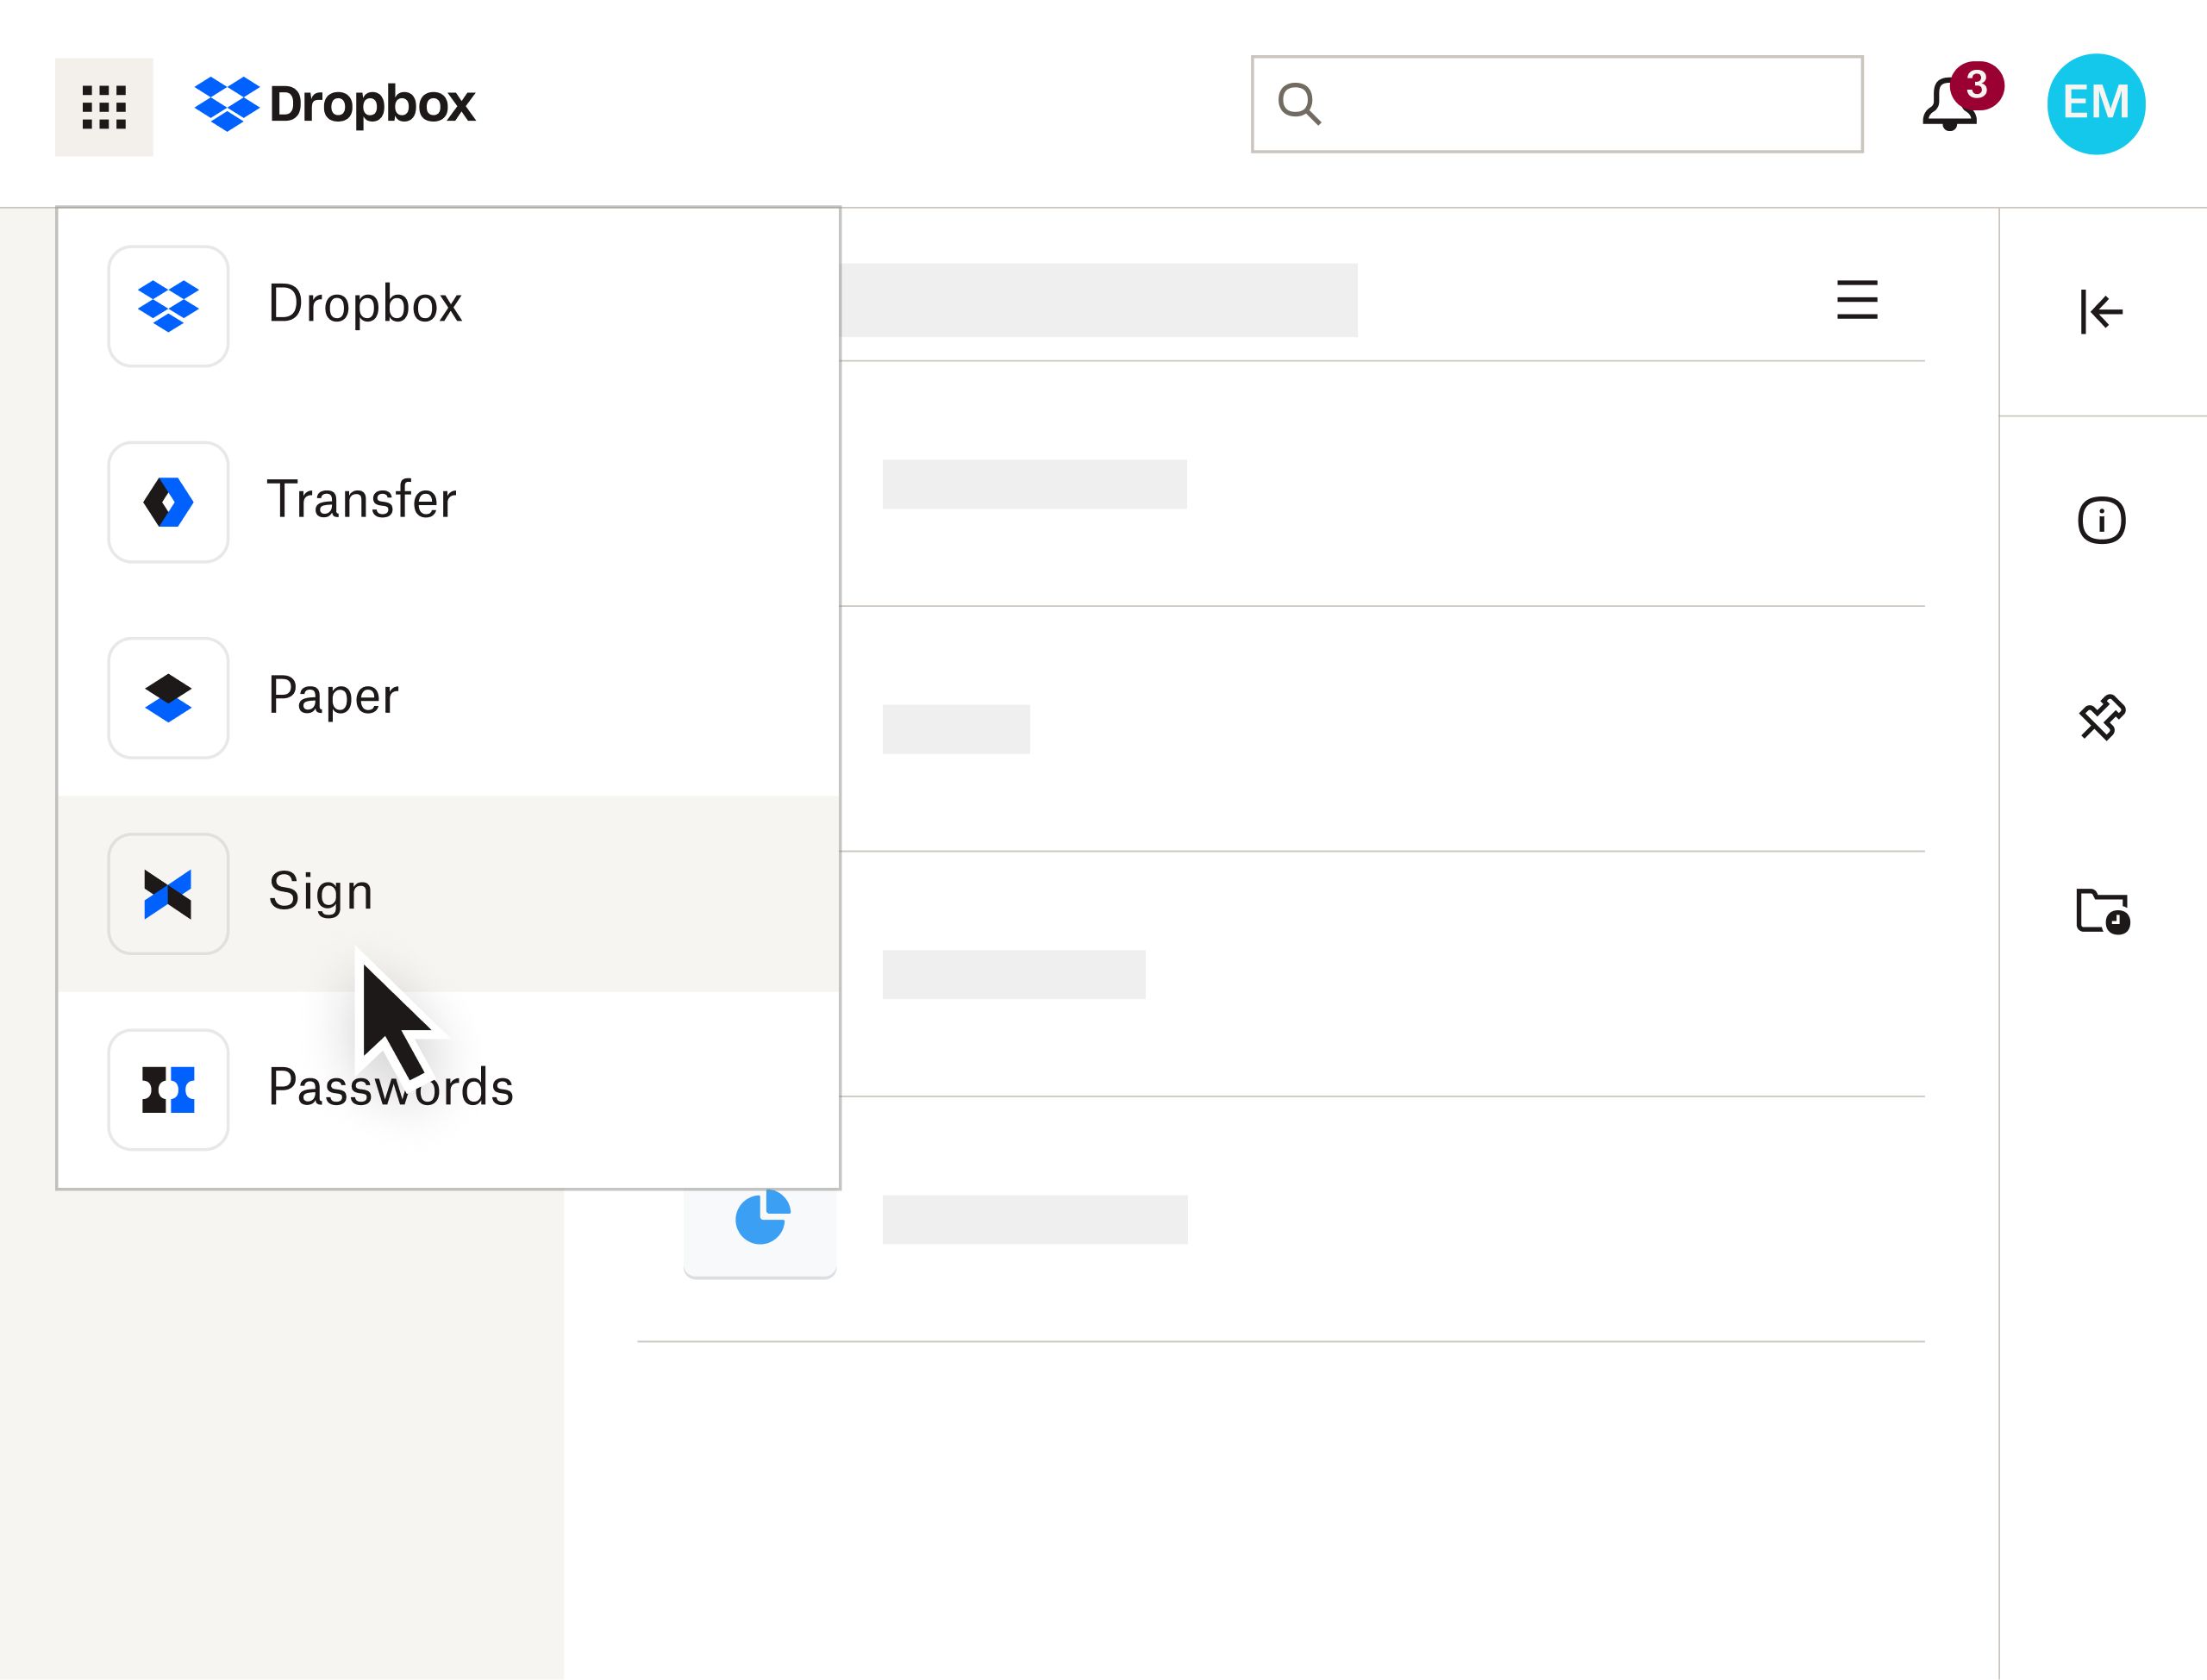 La interfaz de Dropbox con un usuario seleccionando Sign en un menú desplegable de productos